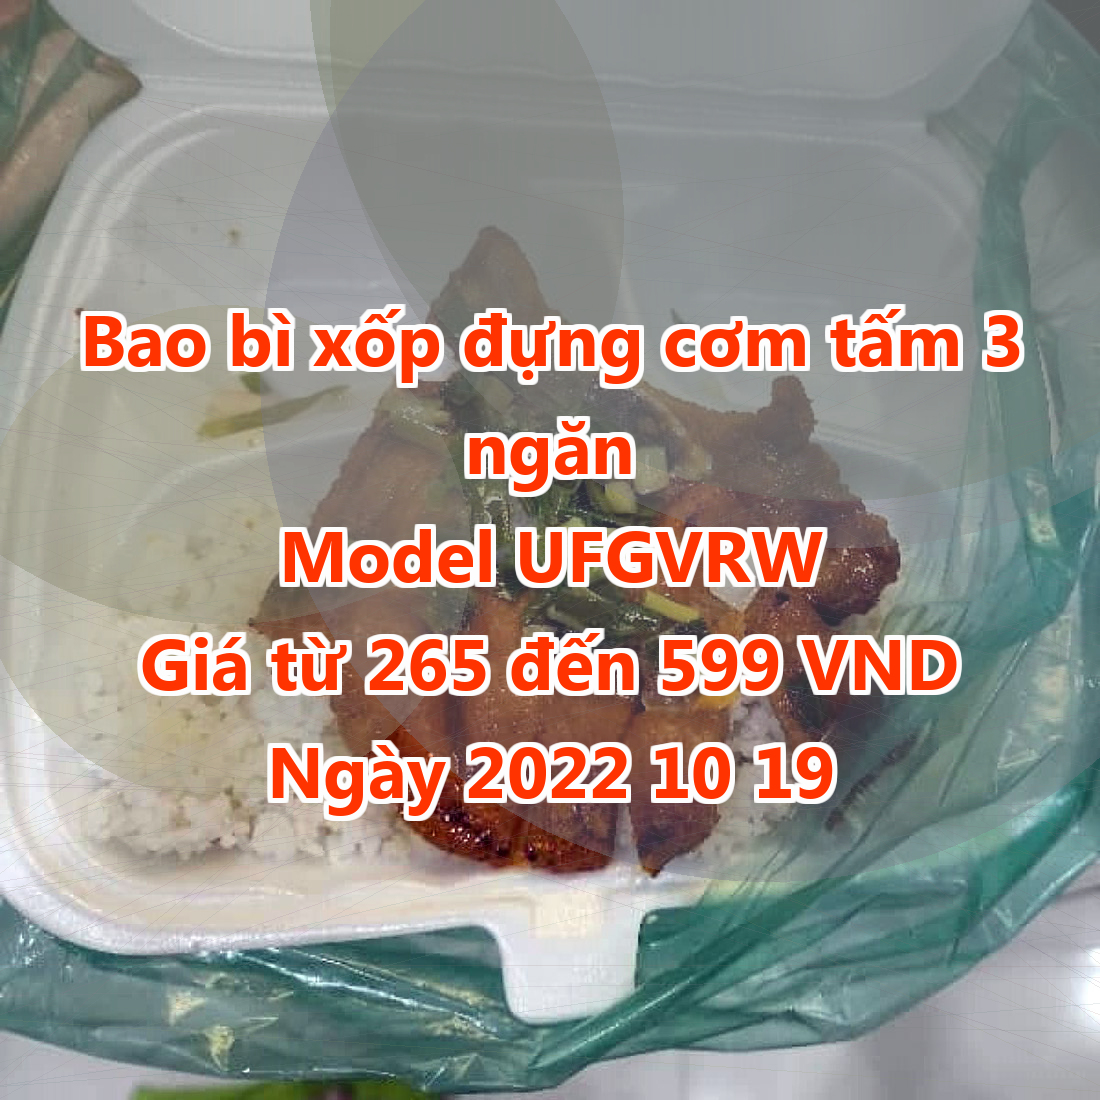 Bao bì xốp đựng cơm tấm 3 ngăn - Model UFGVRW - Giá 265 VND